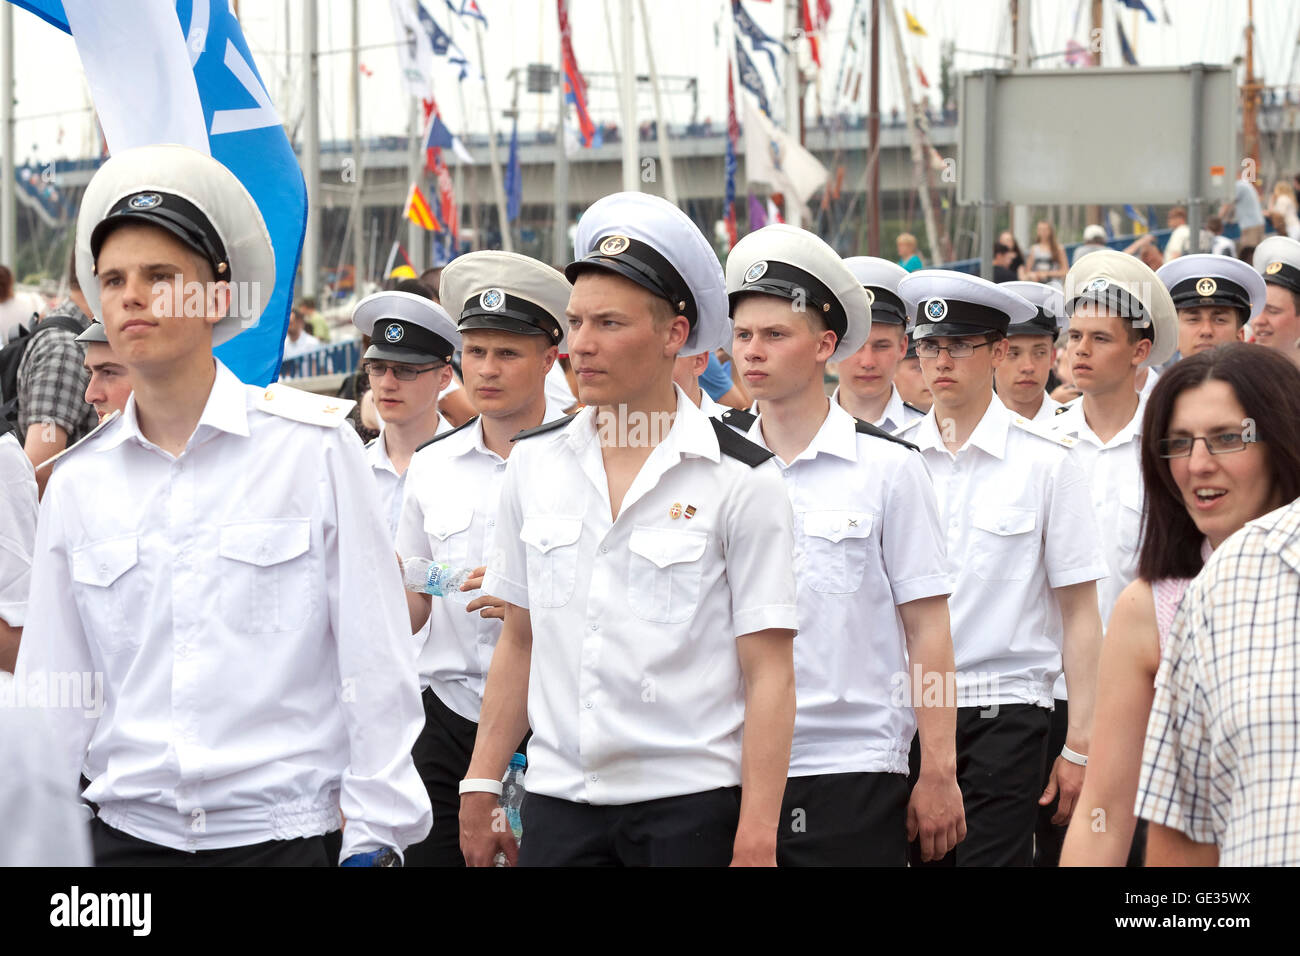 Stettin, Polen - 13. Juni 2015: Sedov Segeln Schiff Besatzung Parade auf Chrobry Damm während der hohen Schiffe Regatta 2015 endgültig. Stockfoto